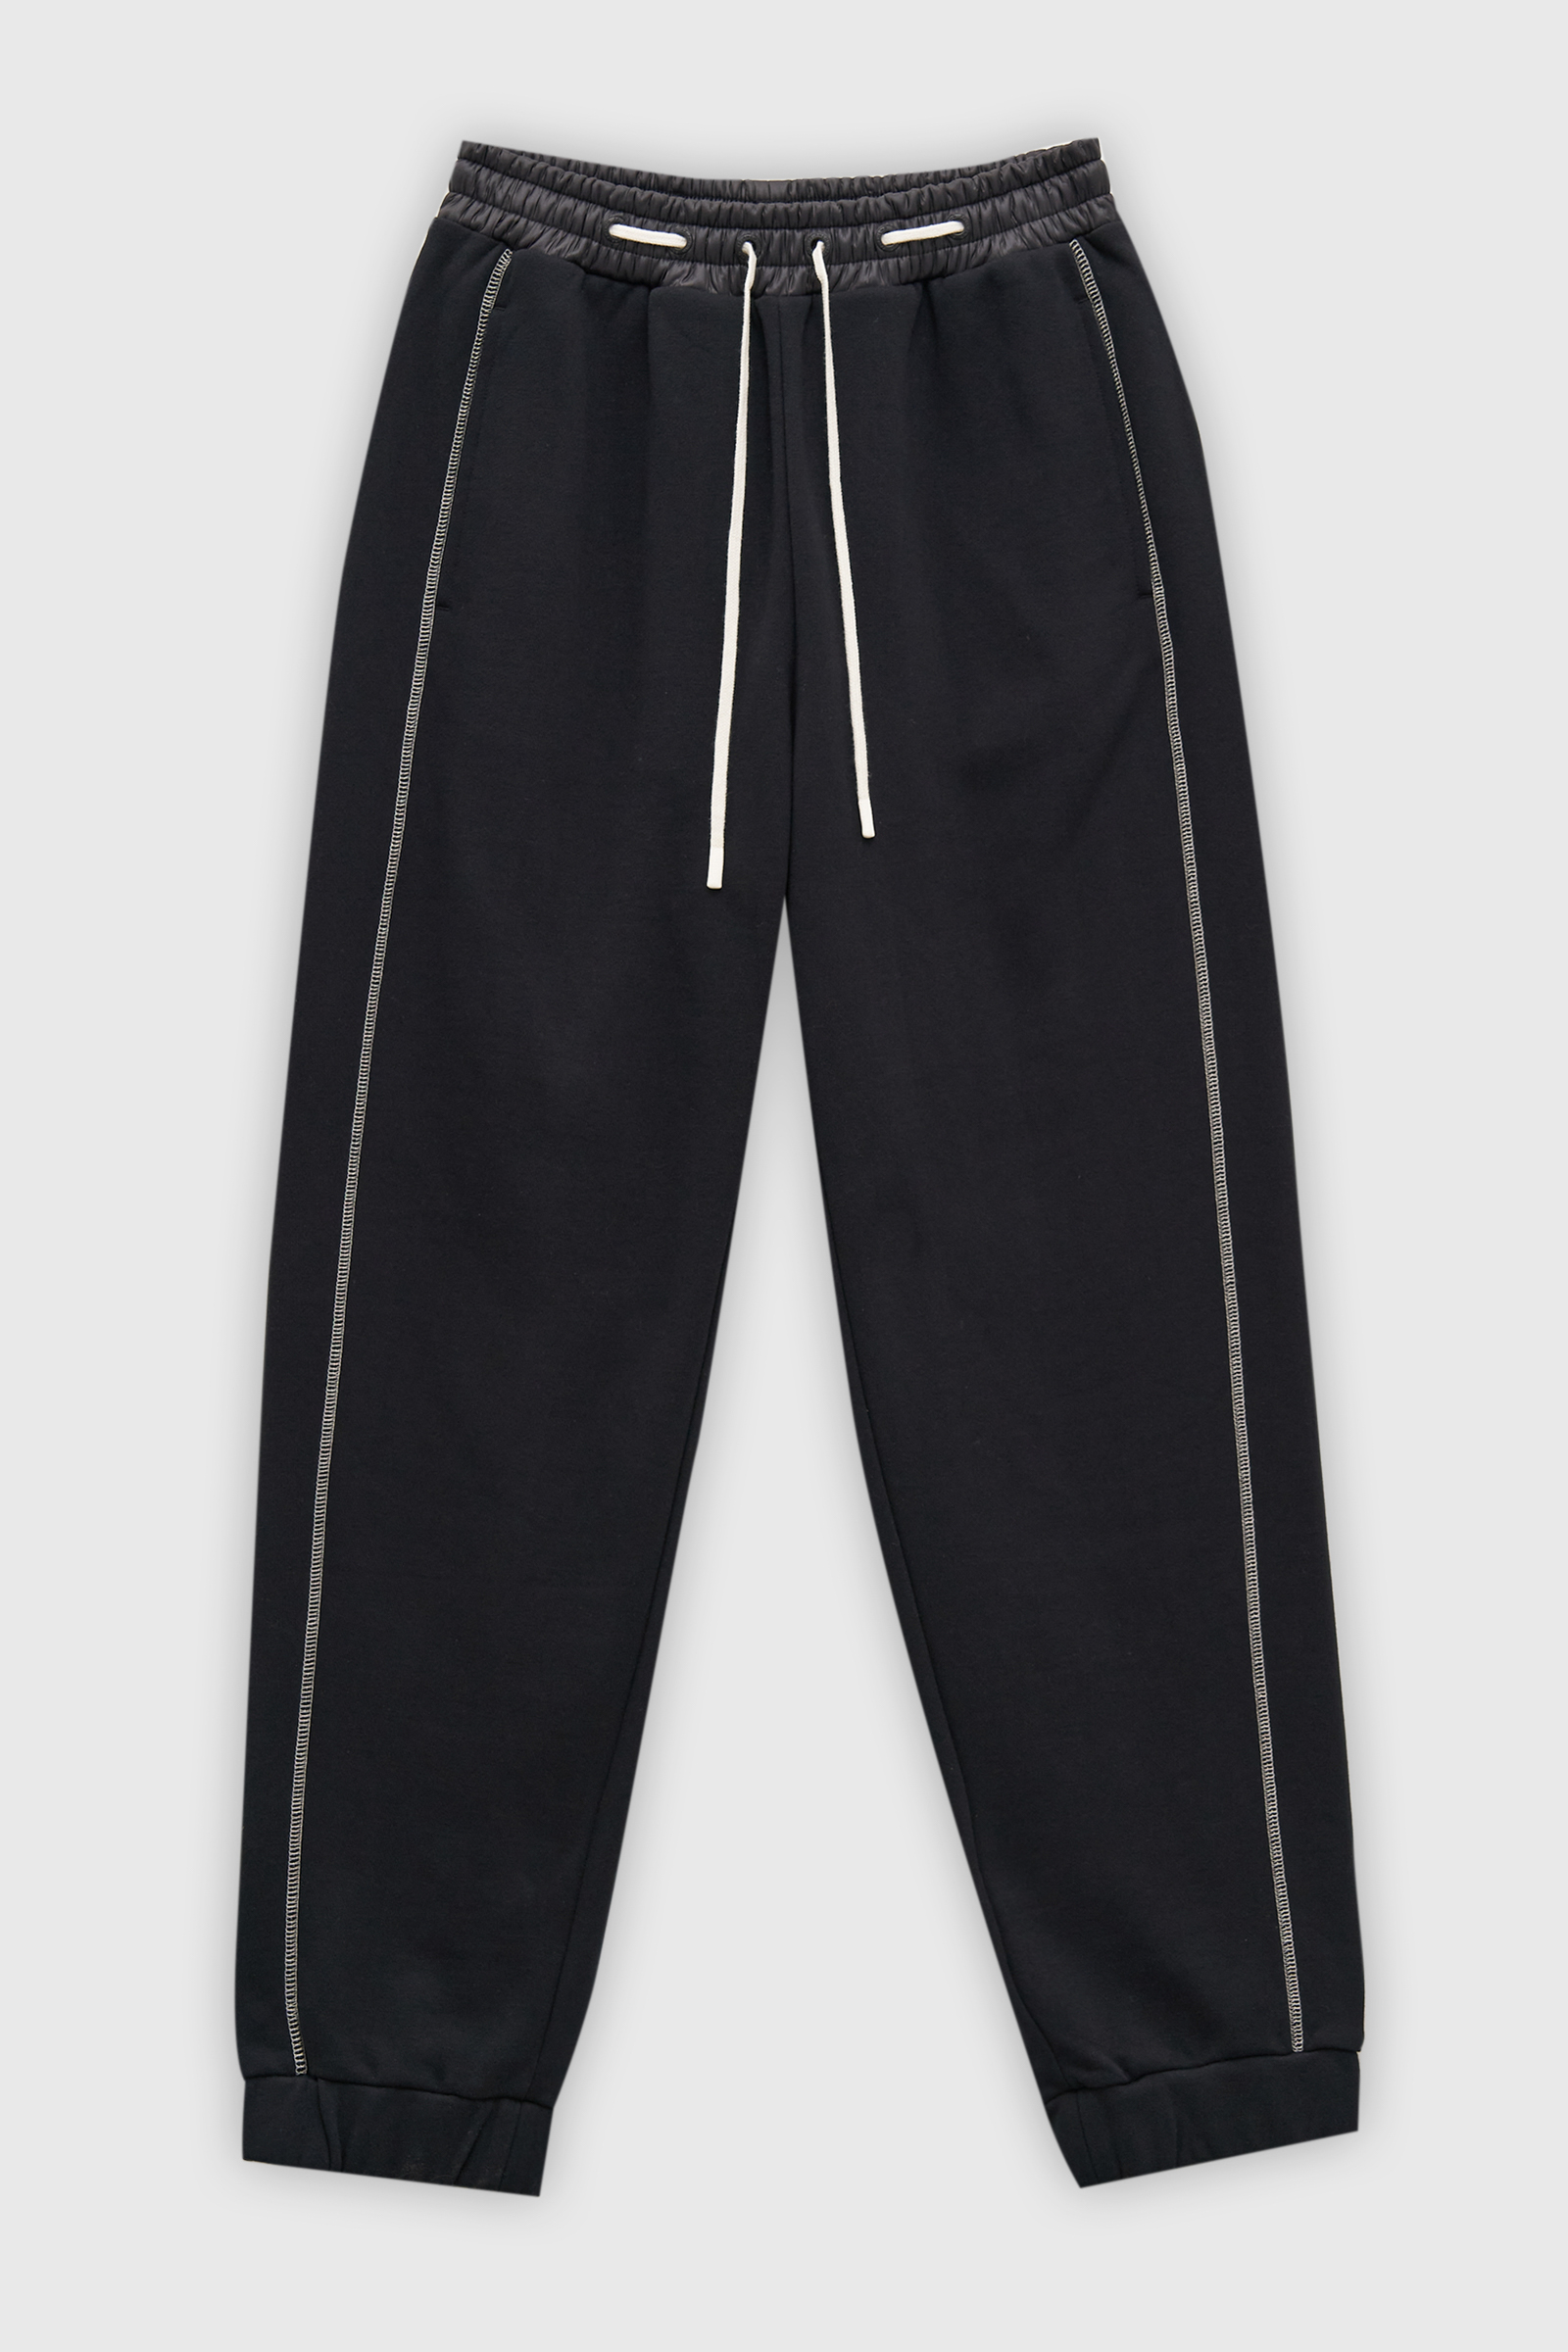 Спортивные брюки женские Finn Flare FAD110138 черные XL